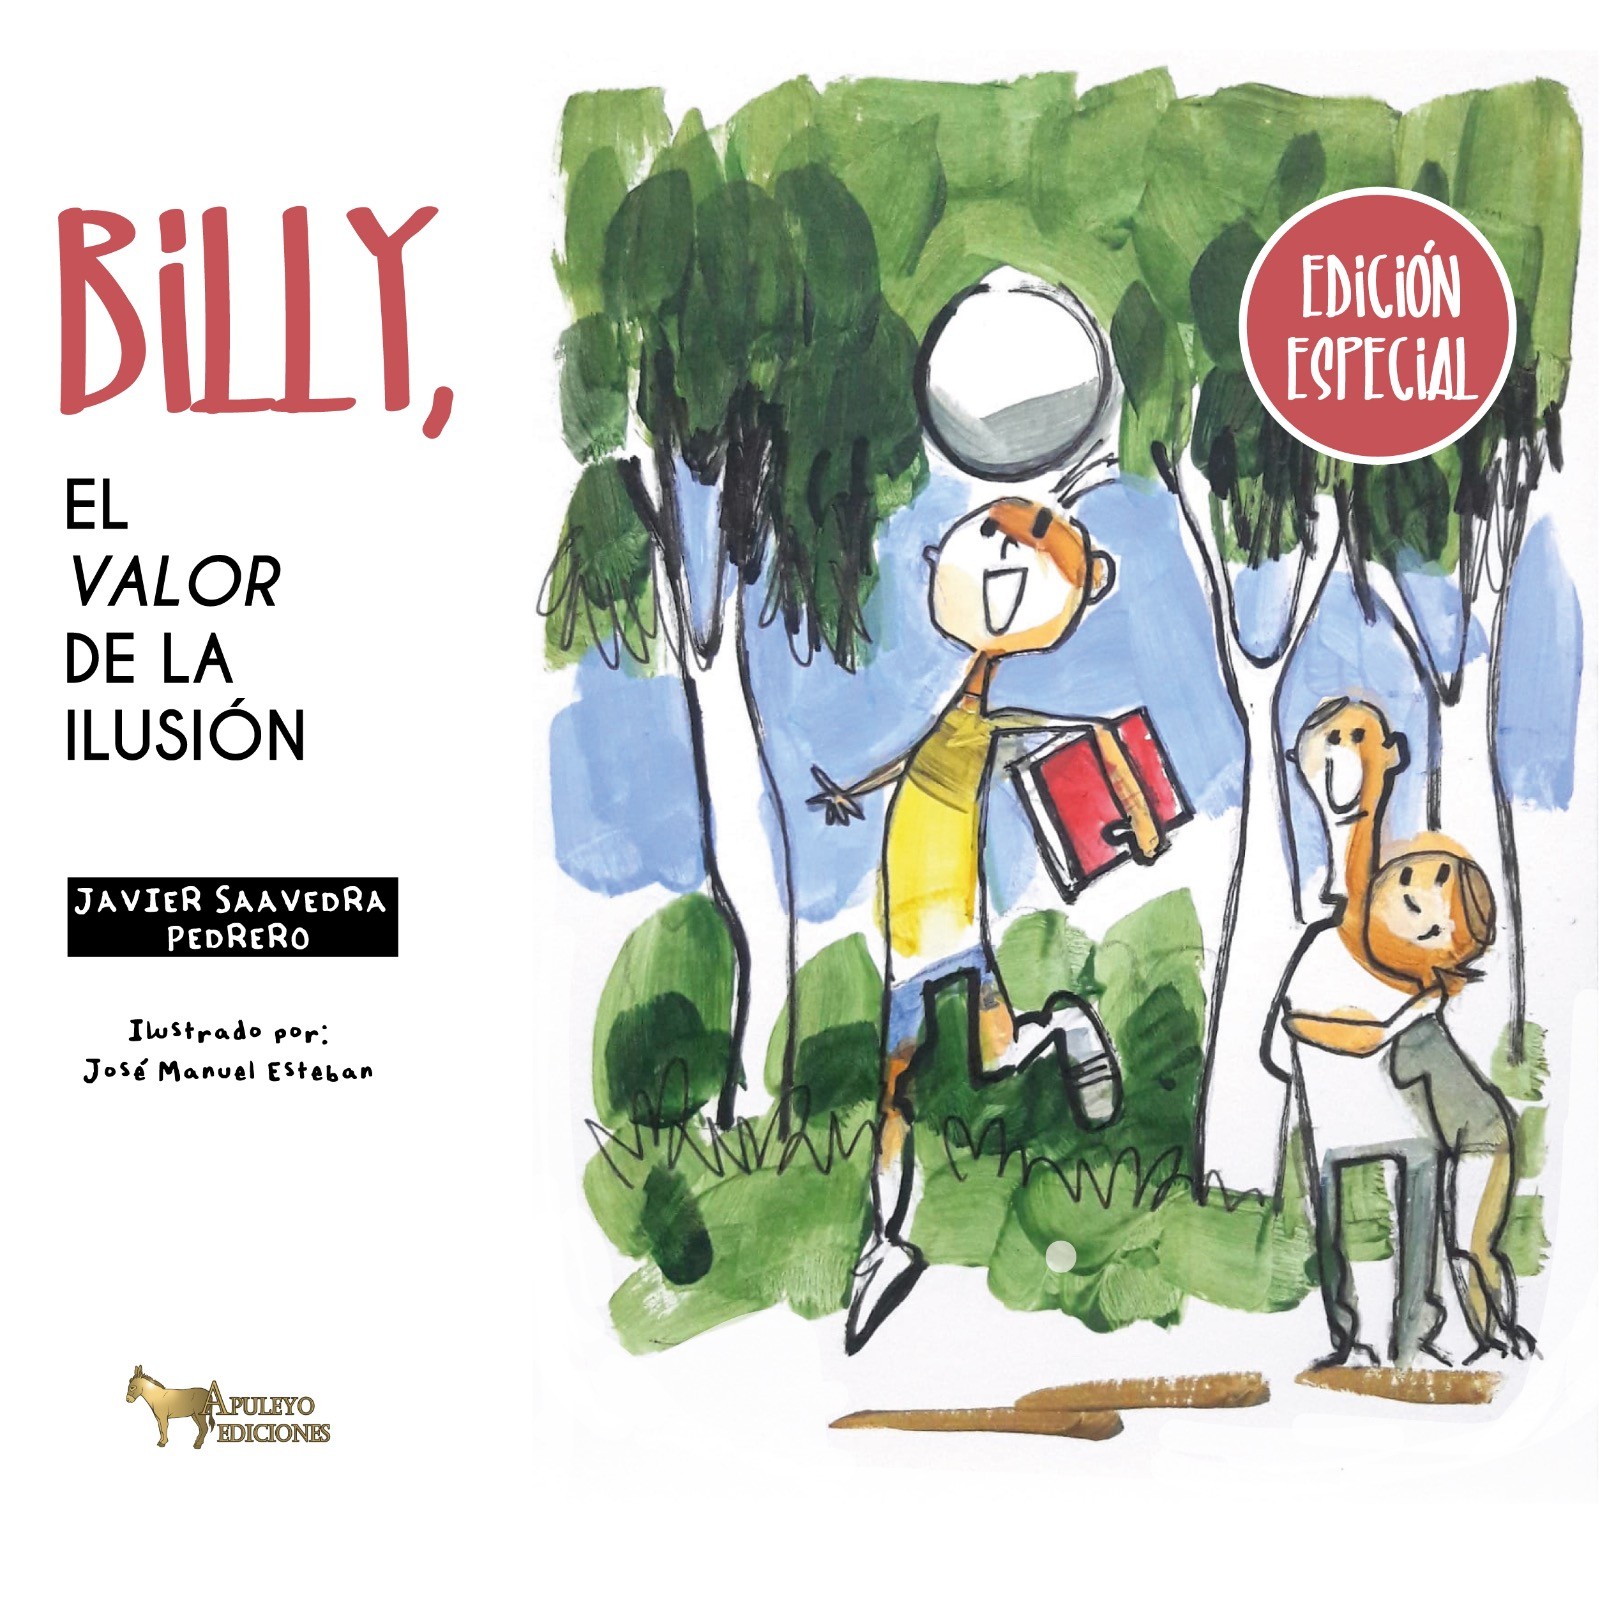 Billy, el valor de la ilusión